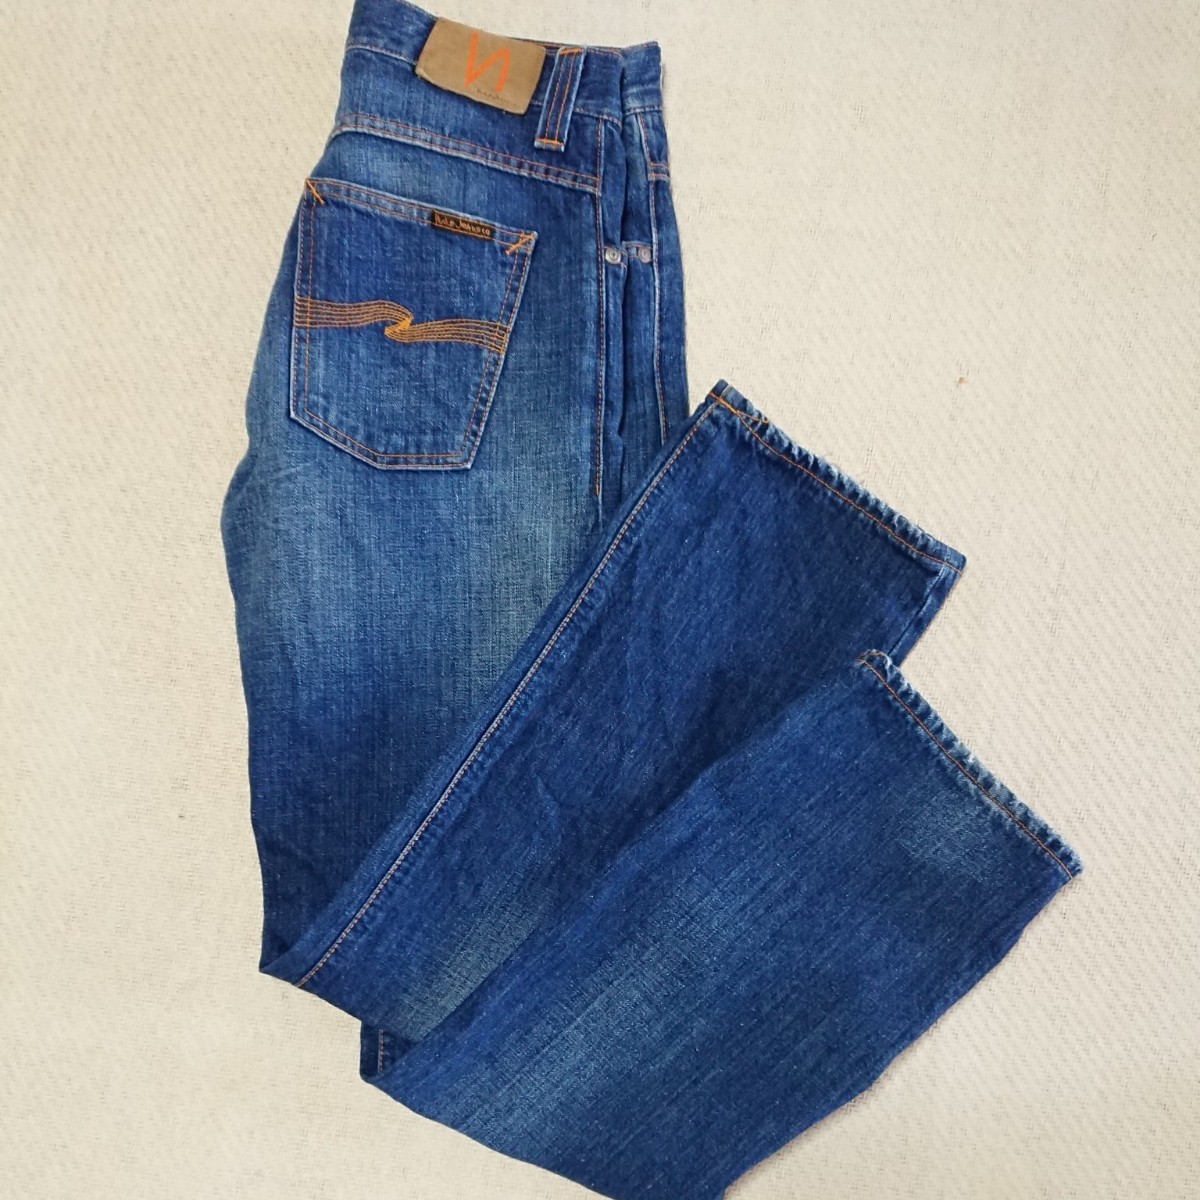 【Nudie Jeans】綿100% ストレートデニムパンツ 30×32